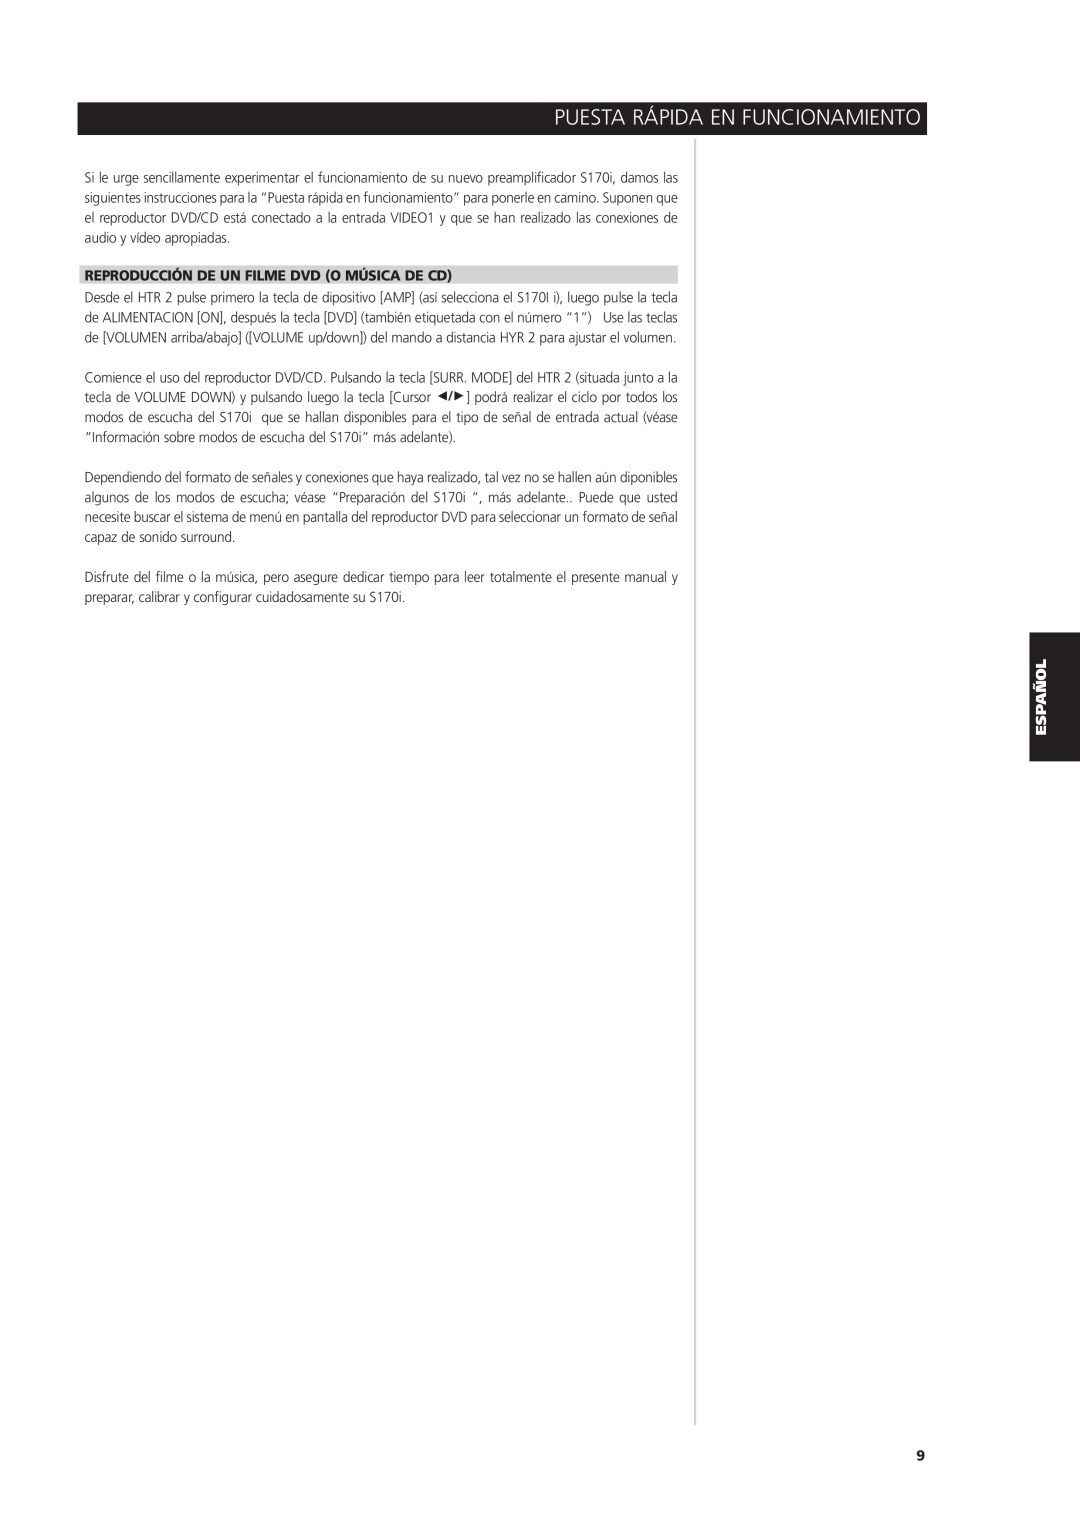 NAD S170iAV owner manual Puesta Rápida En Funcionamiento, Reproducción De Un Filme Dvd O Música De Cd 